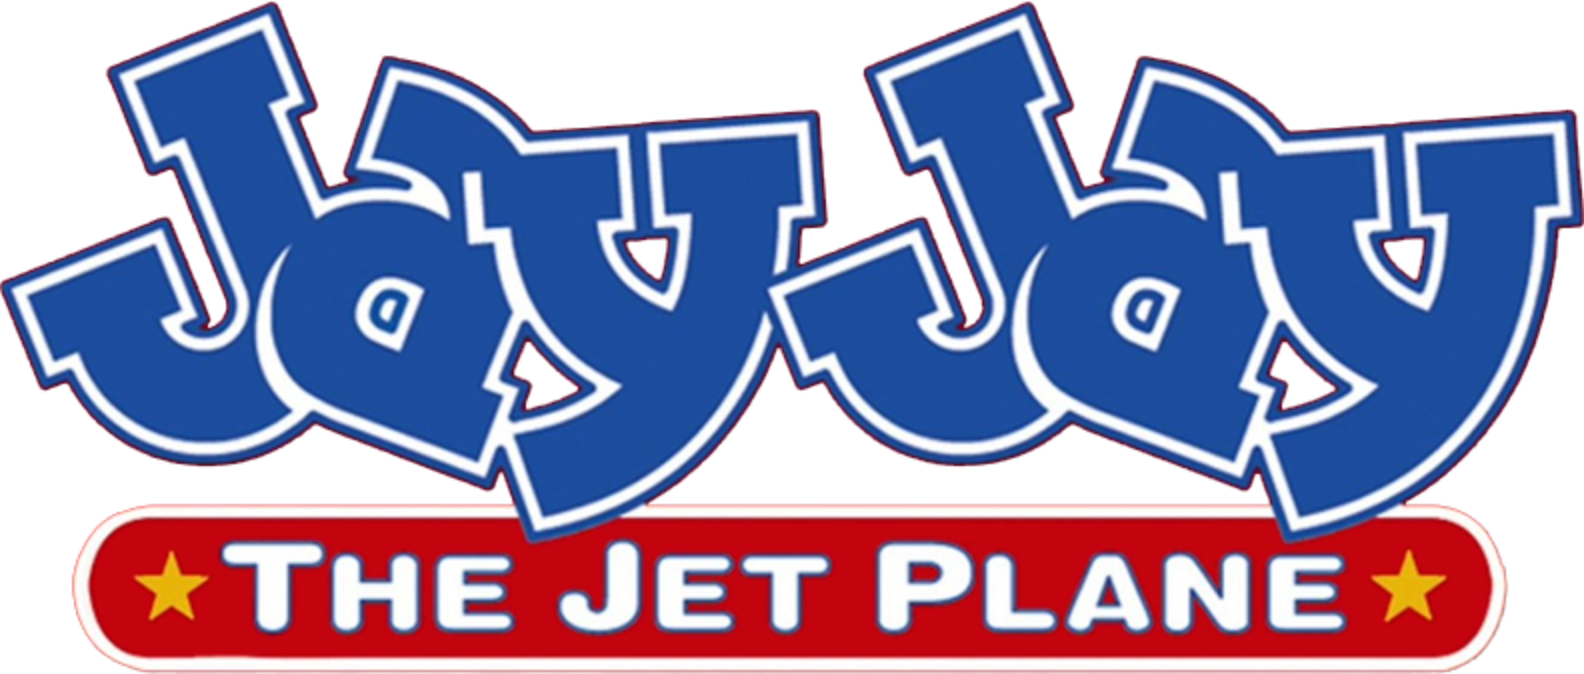 Jay Jay the Jet Plane 